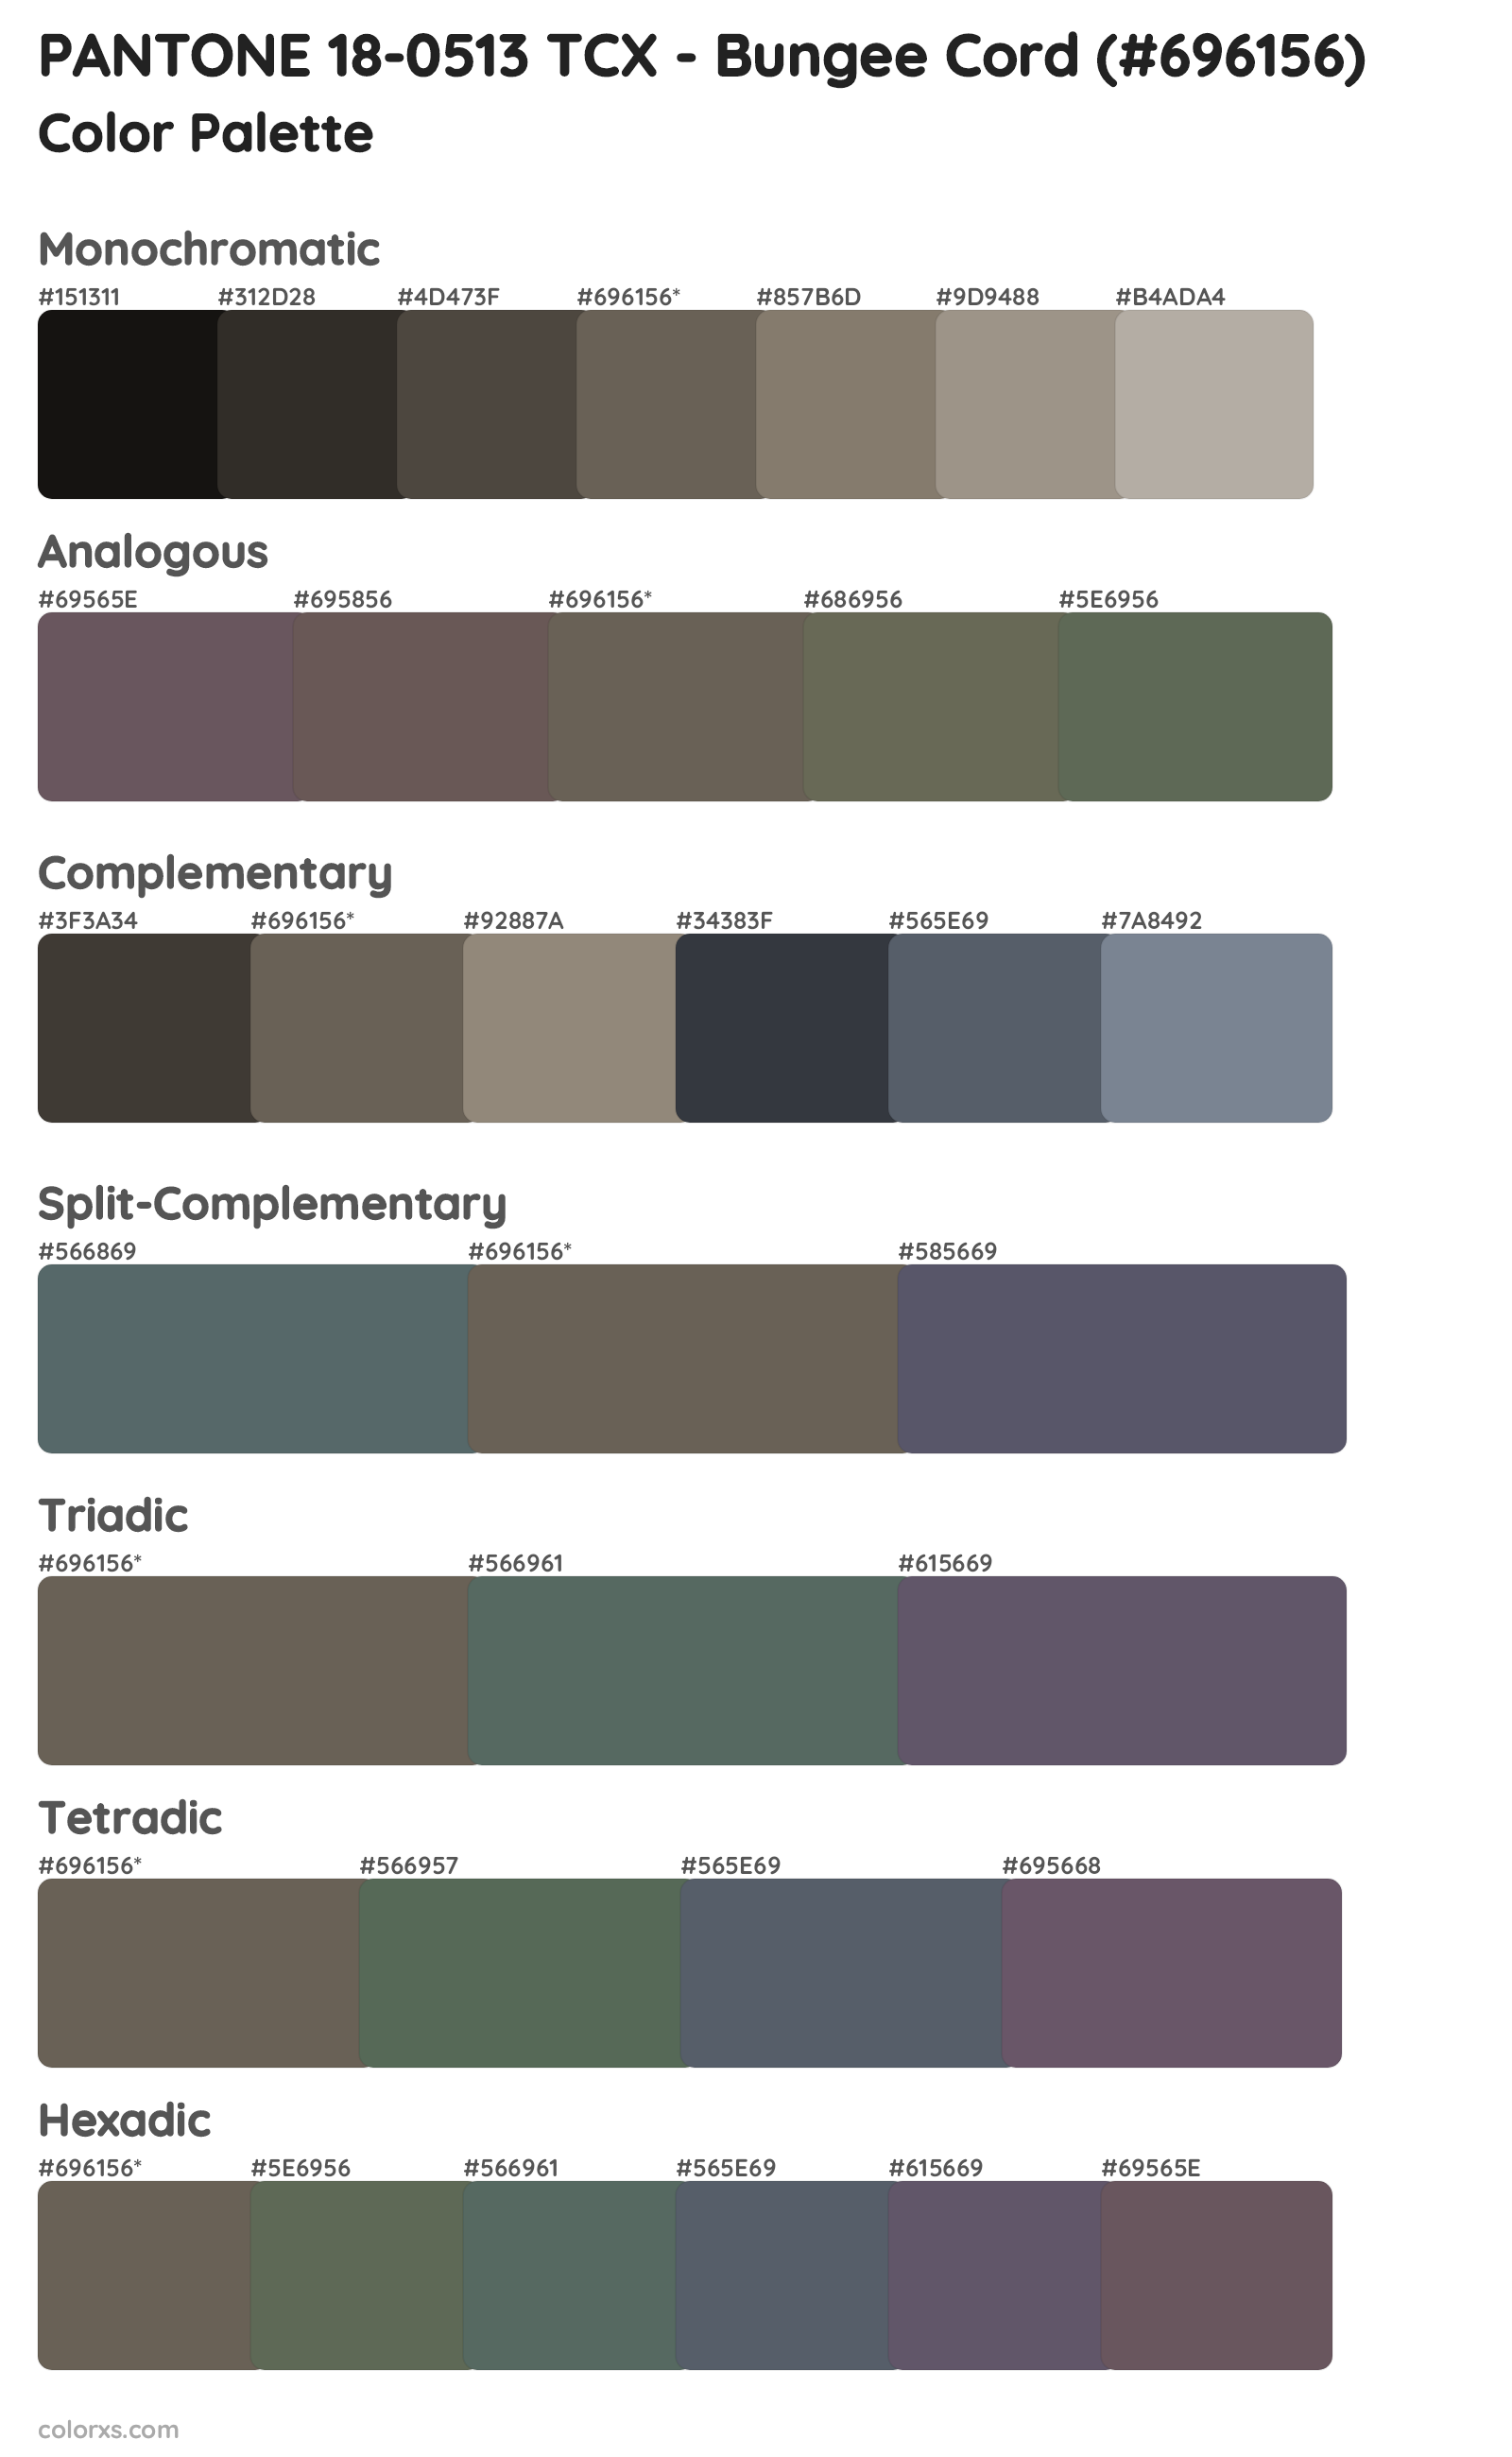 PANTONE 18-0513 TCX - Bungee Cord Color Scheme Palettes